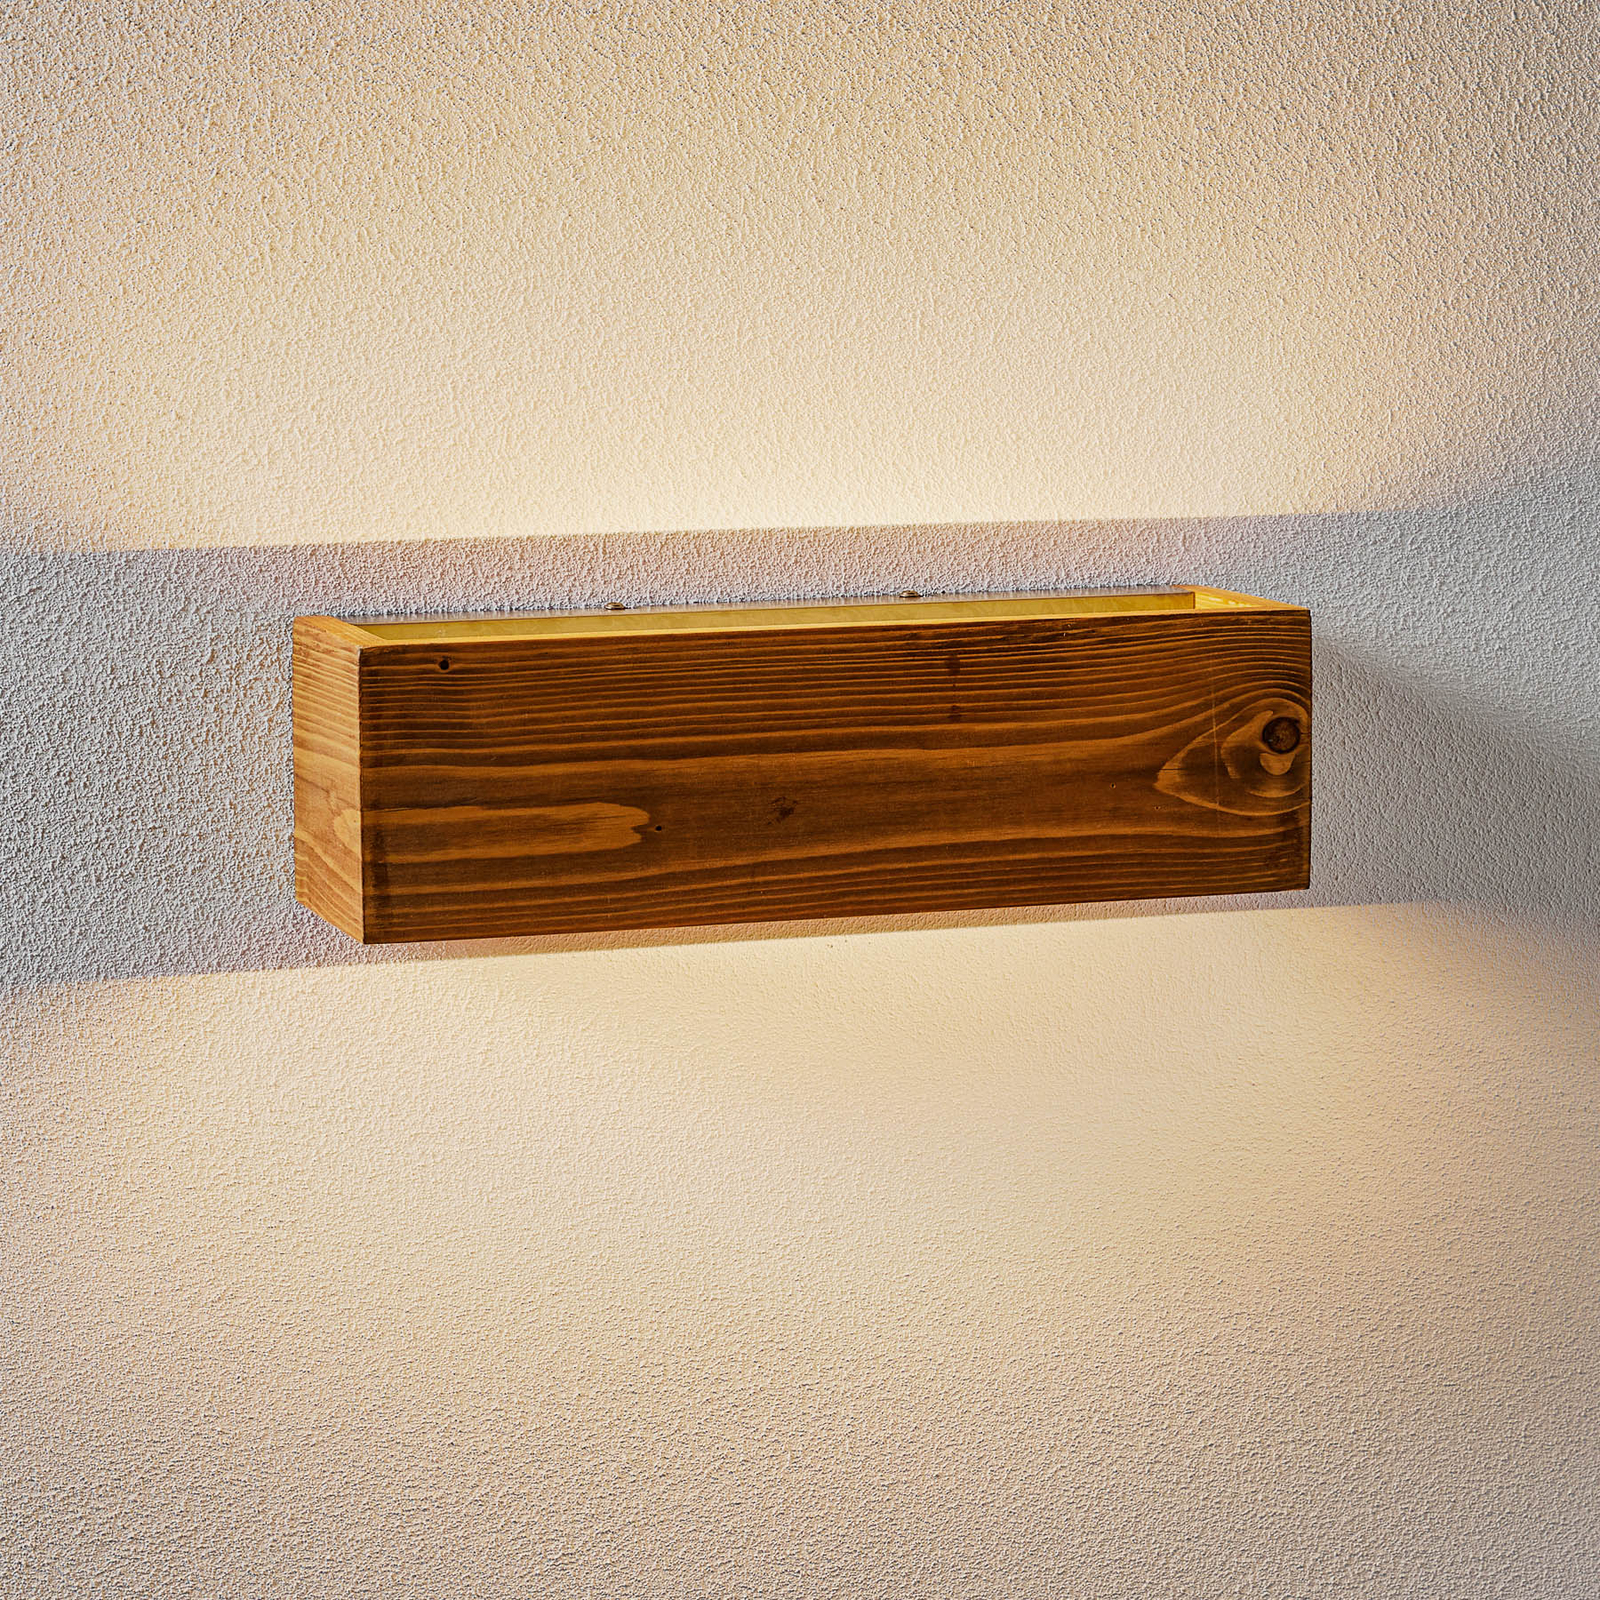 Kinkiet LED Brad z drewna, up/down, 37x11 cm